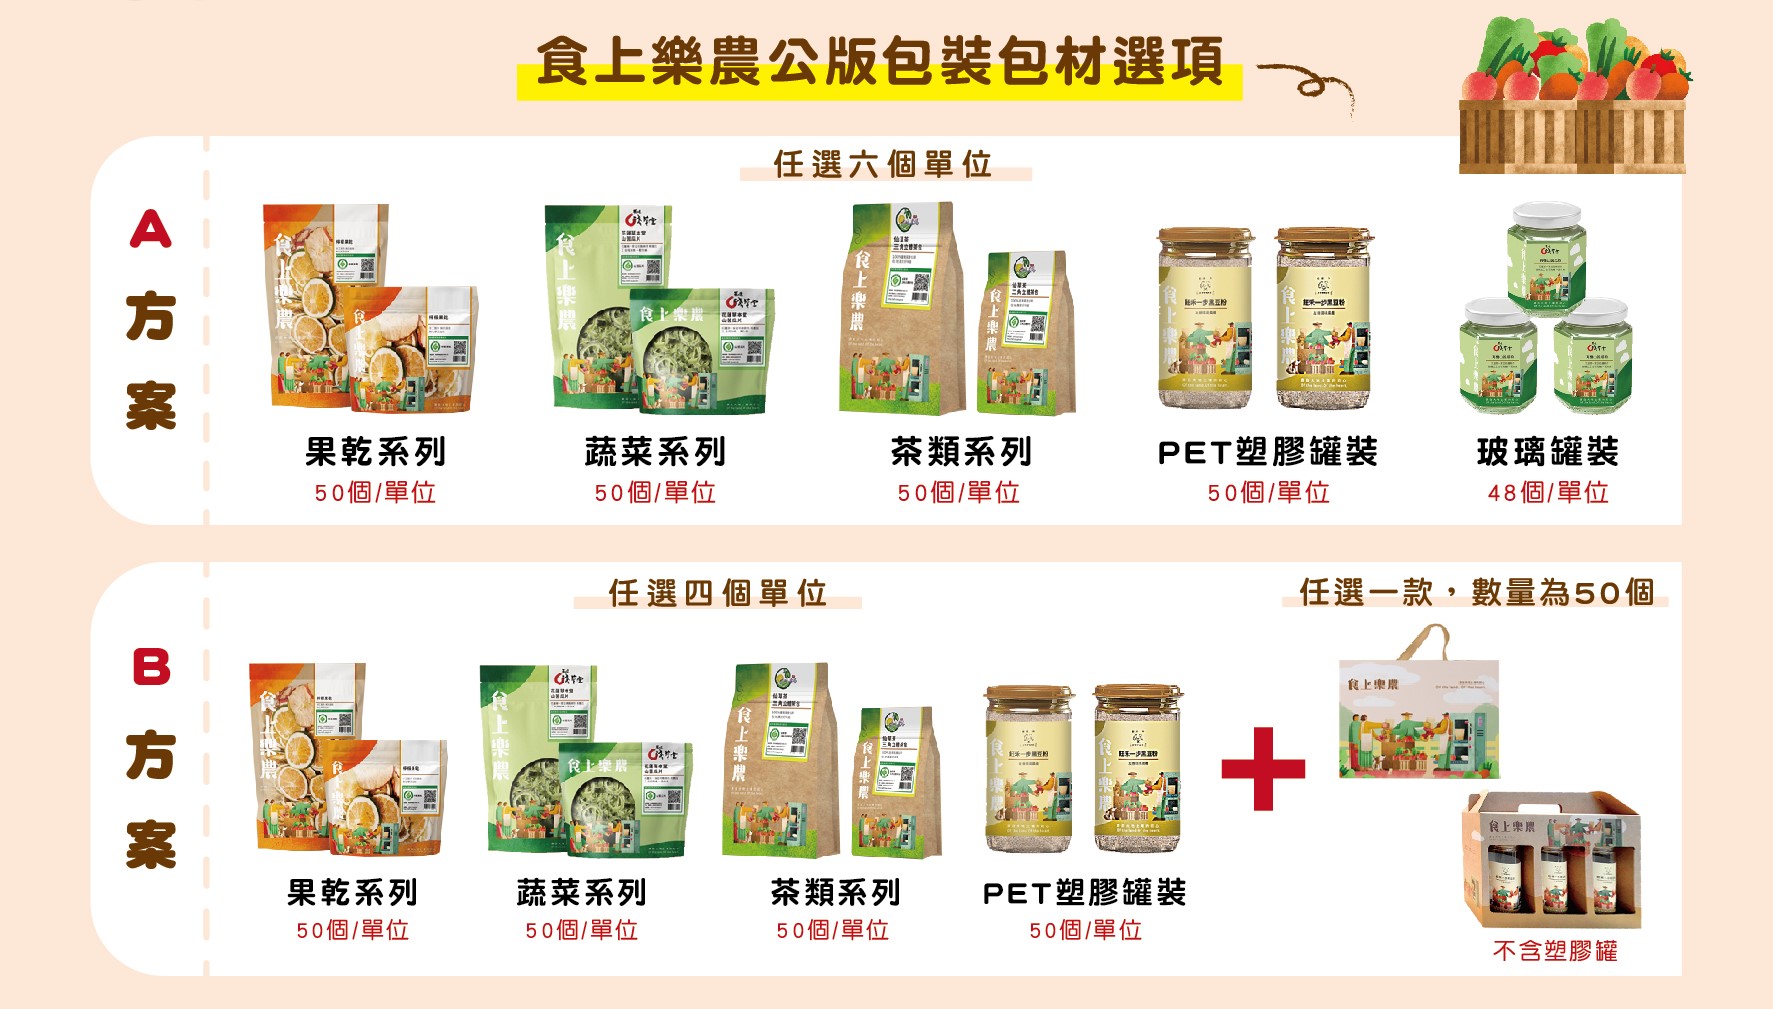 食上樂農公版包裝包材選項